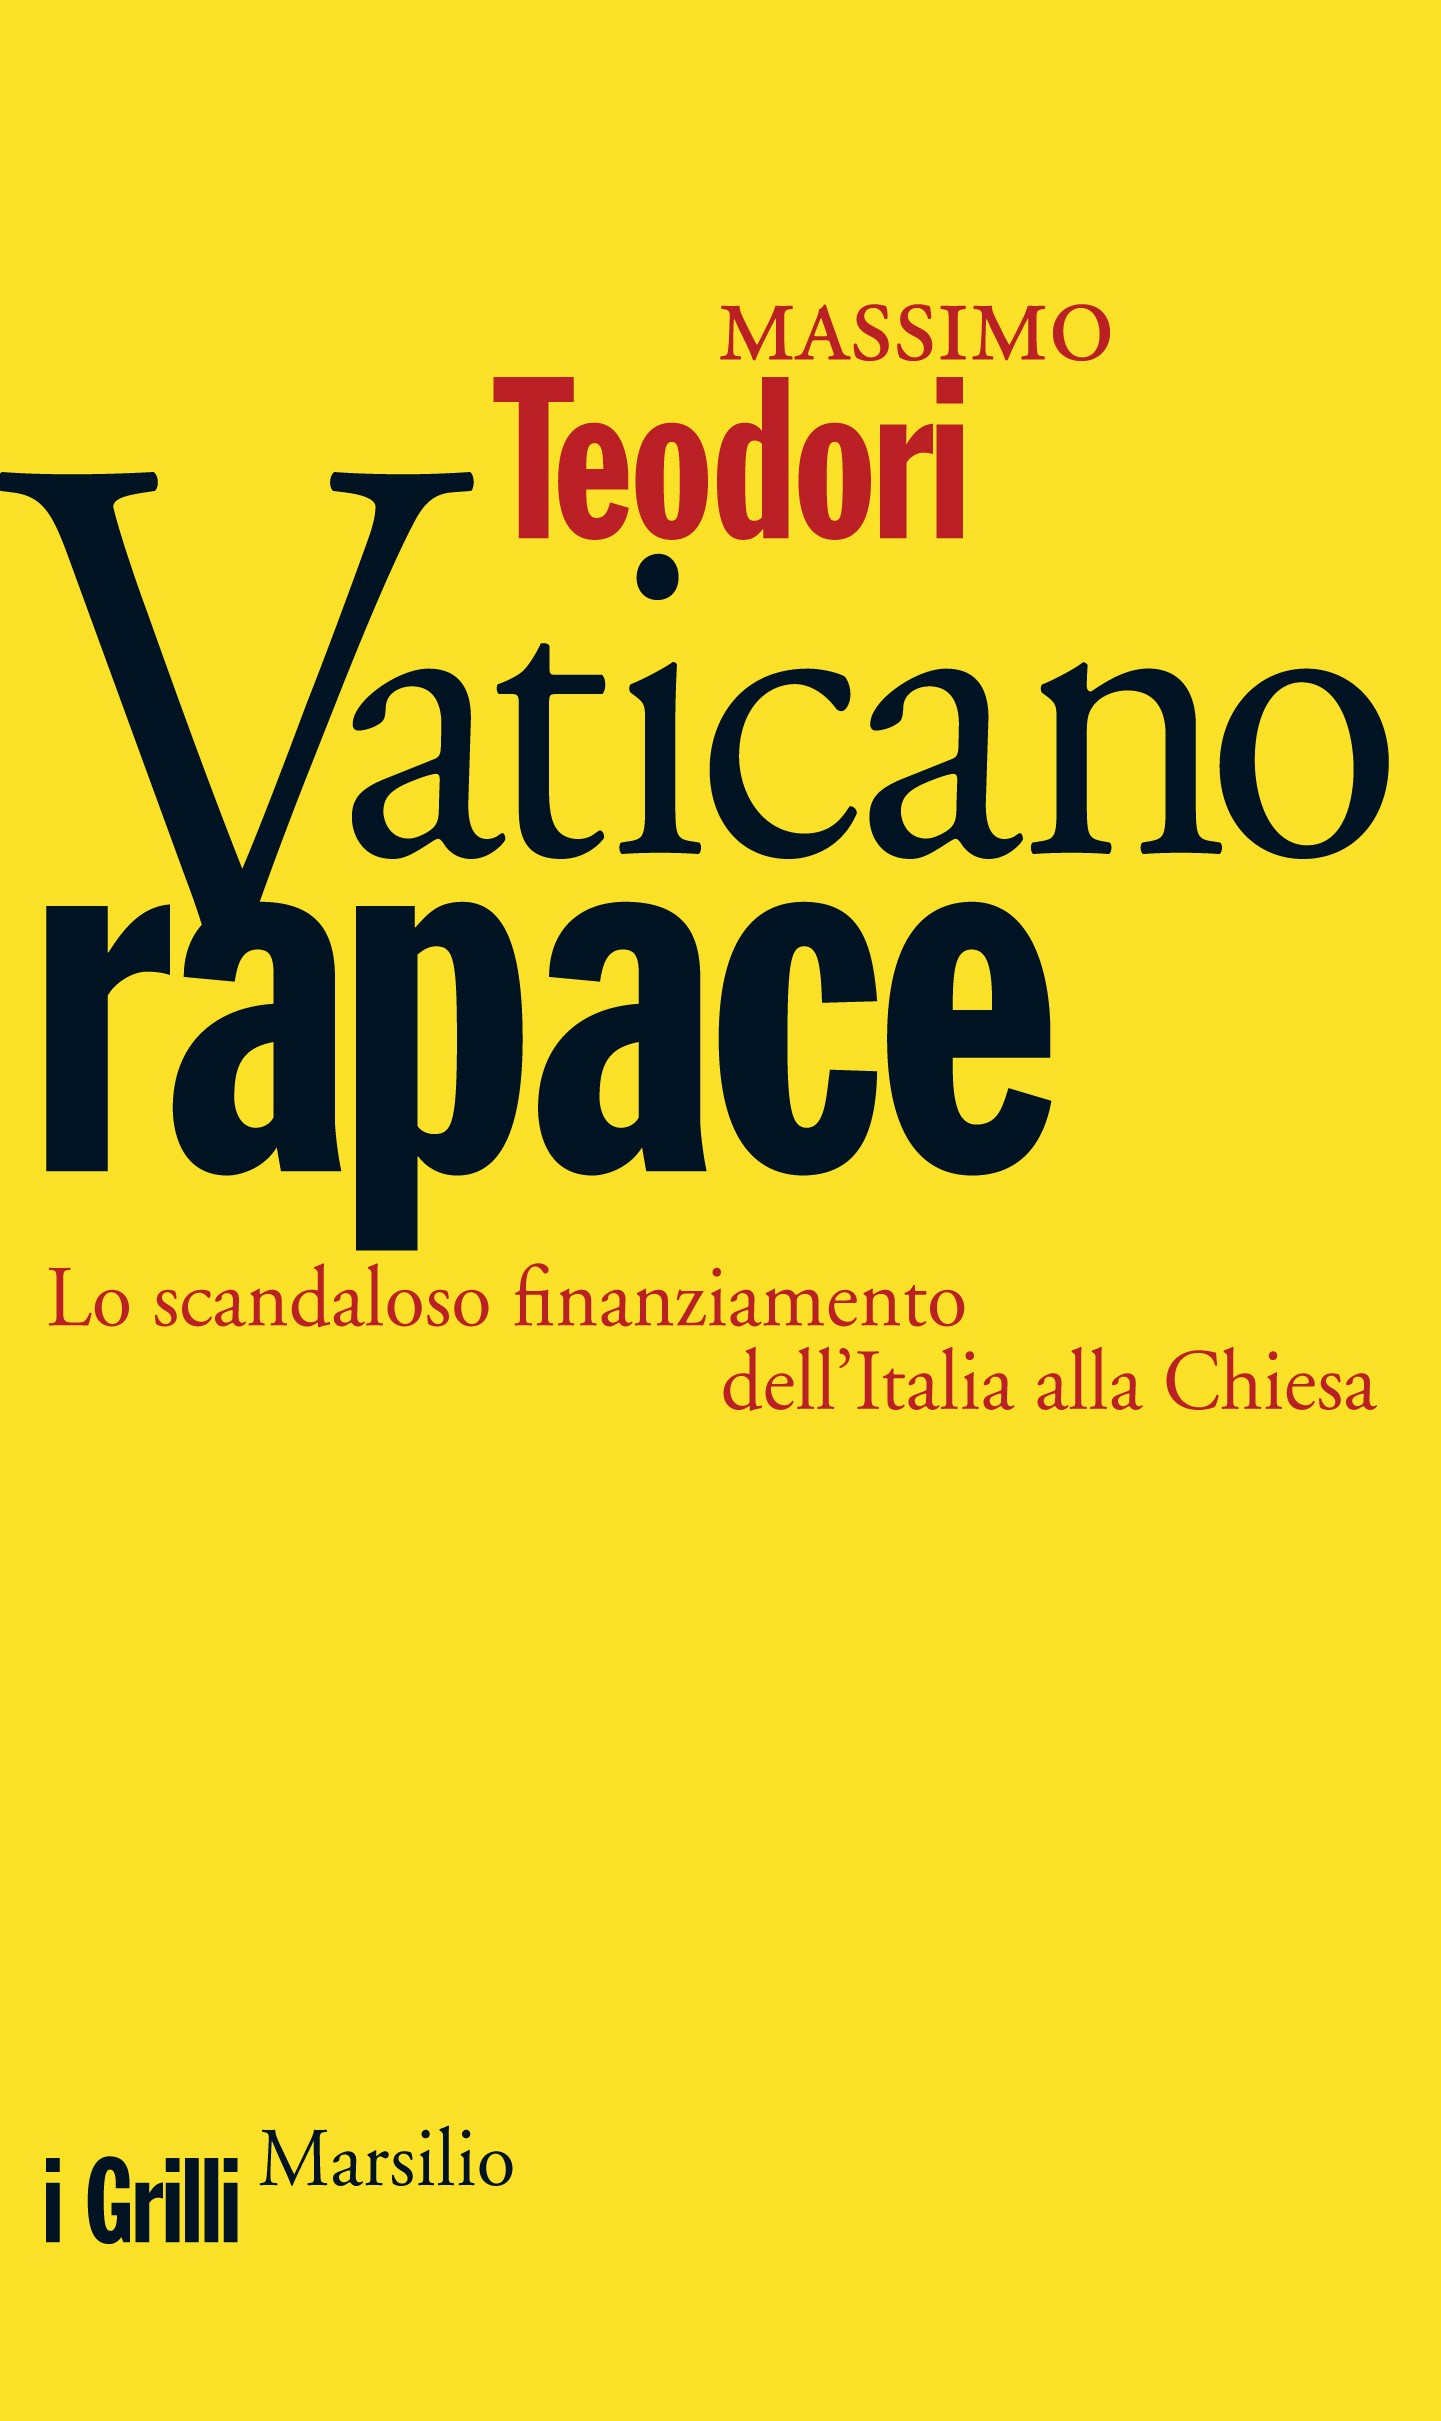 Vaticano rapace - Librerie.coop